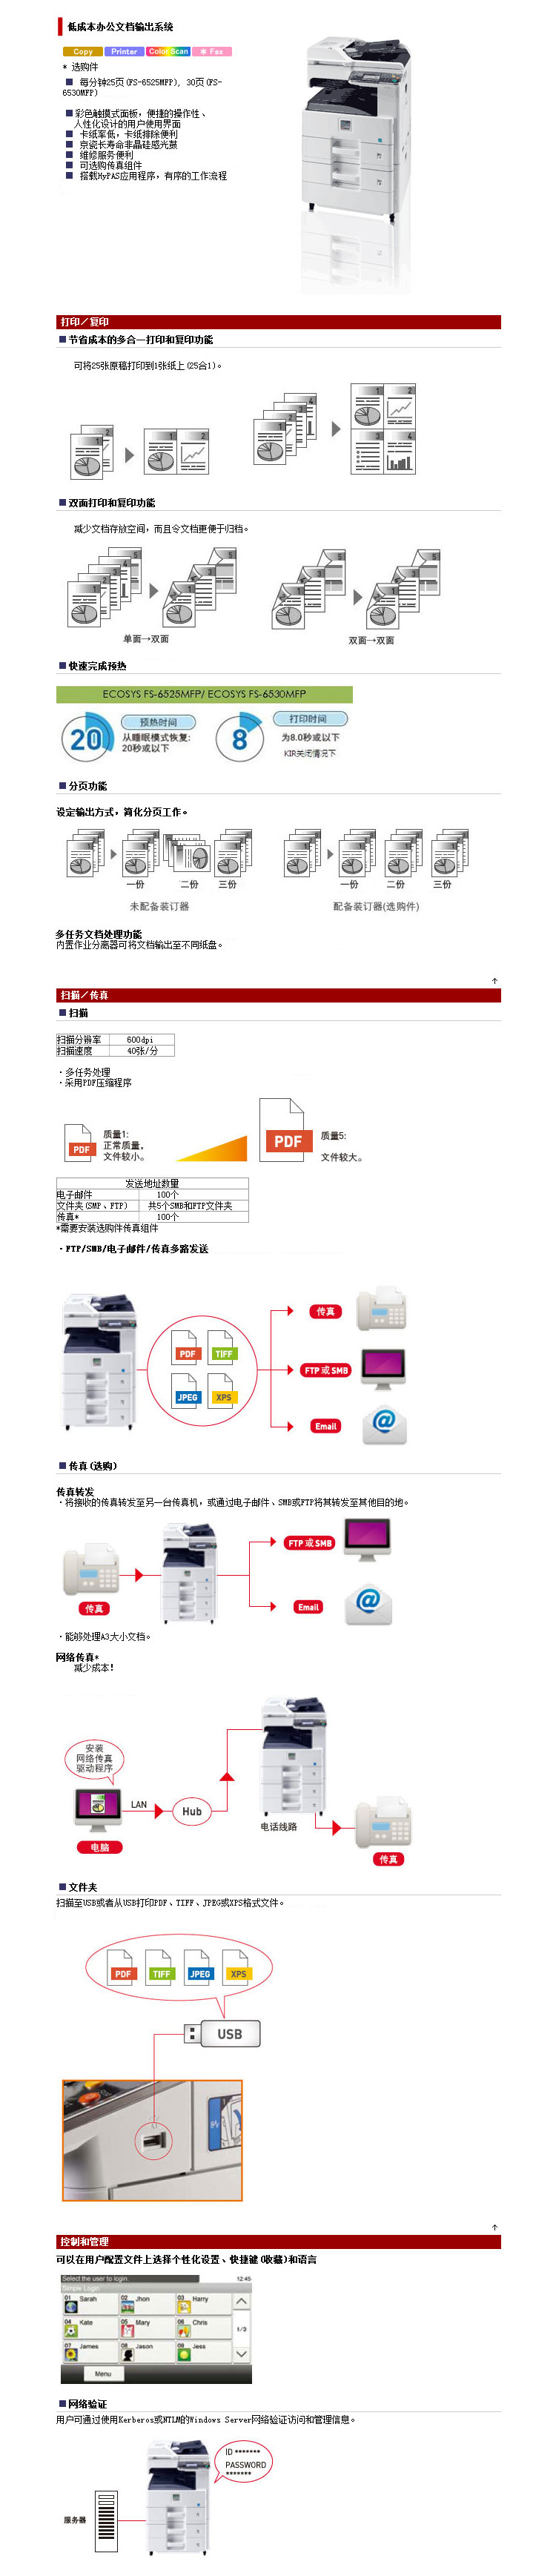 京瓷FS-6525MFPA3黑白数码复印机详情介绍